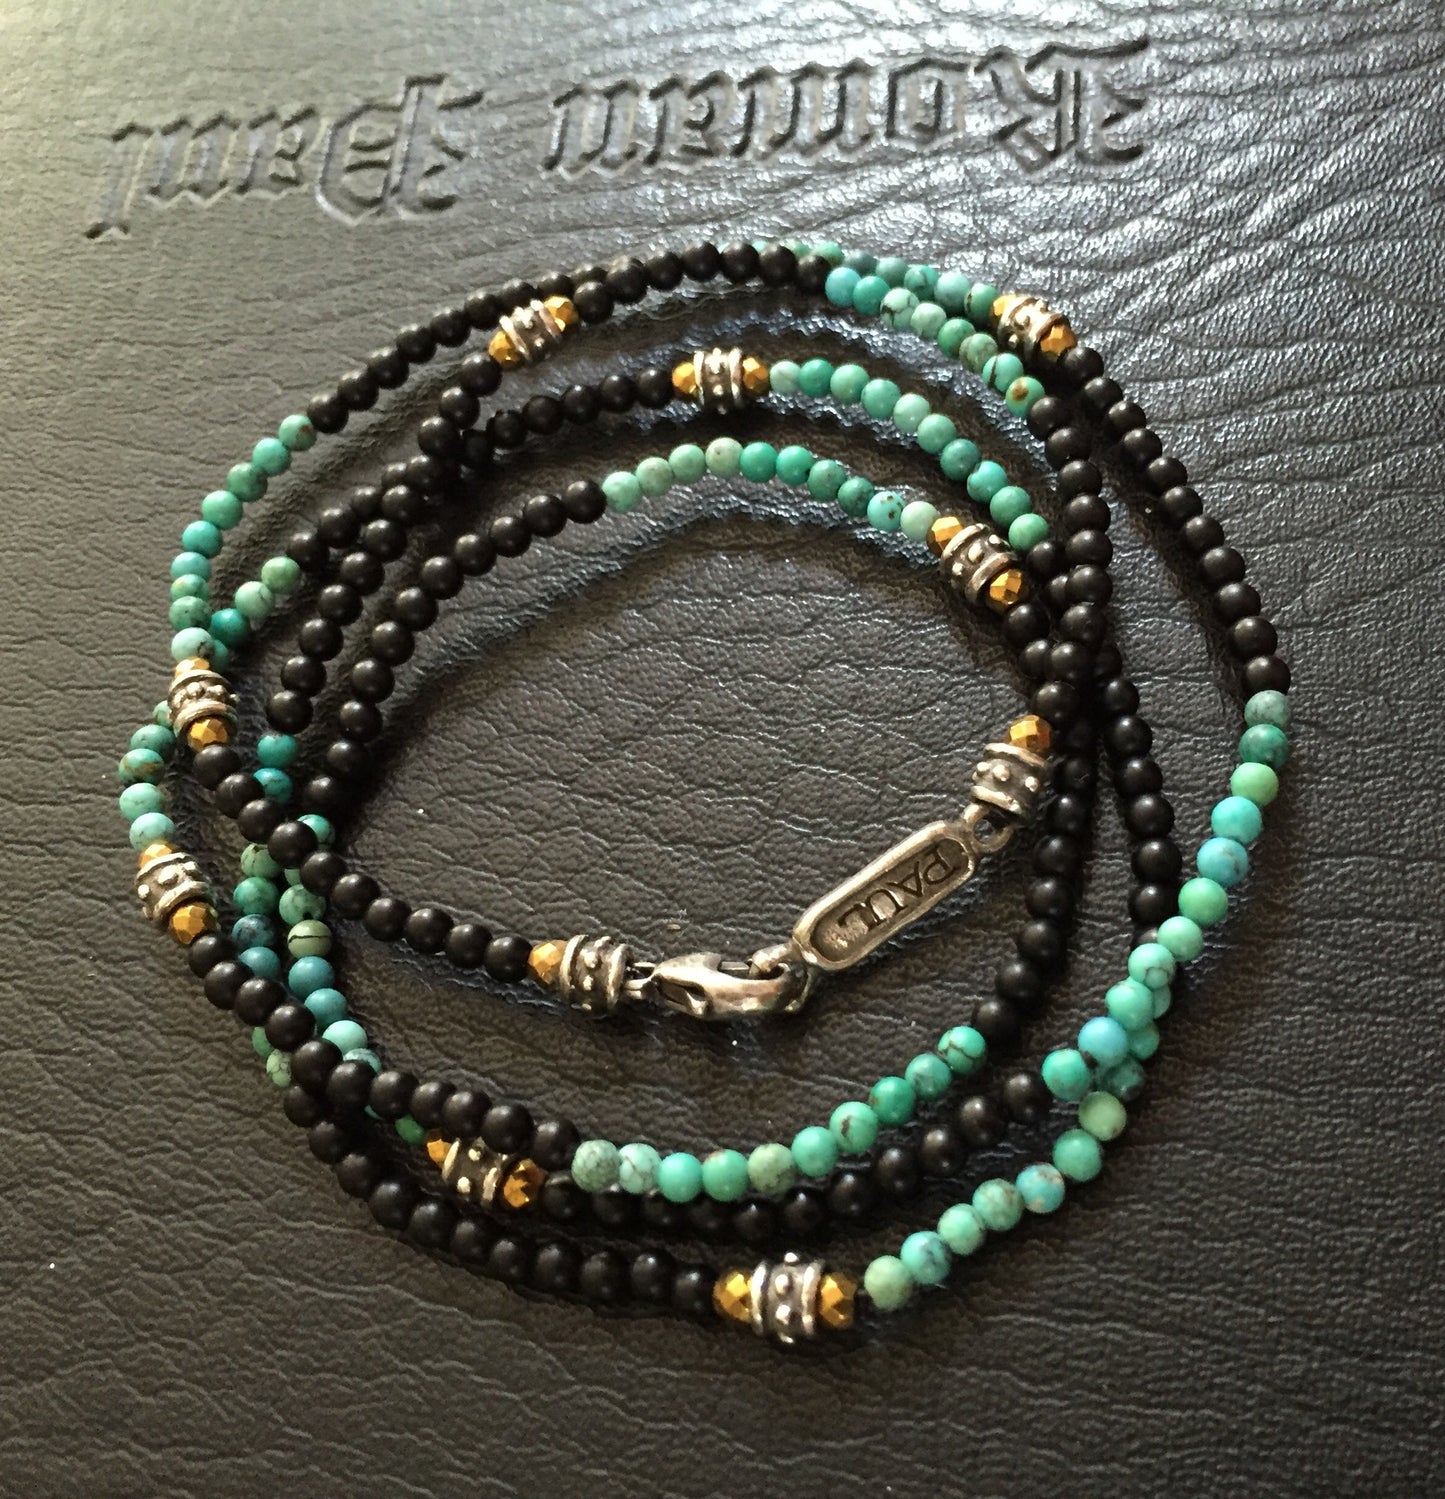 Bracelet - Turquoise & Onyx w Silver Roundels